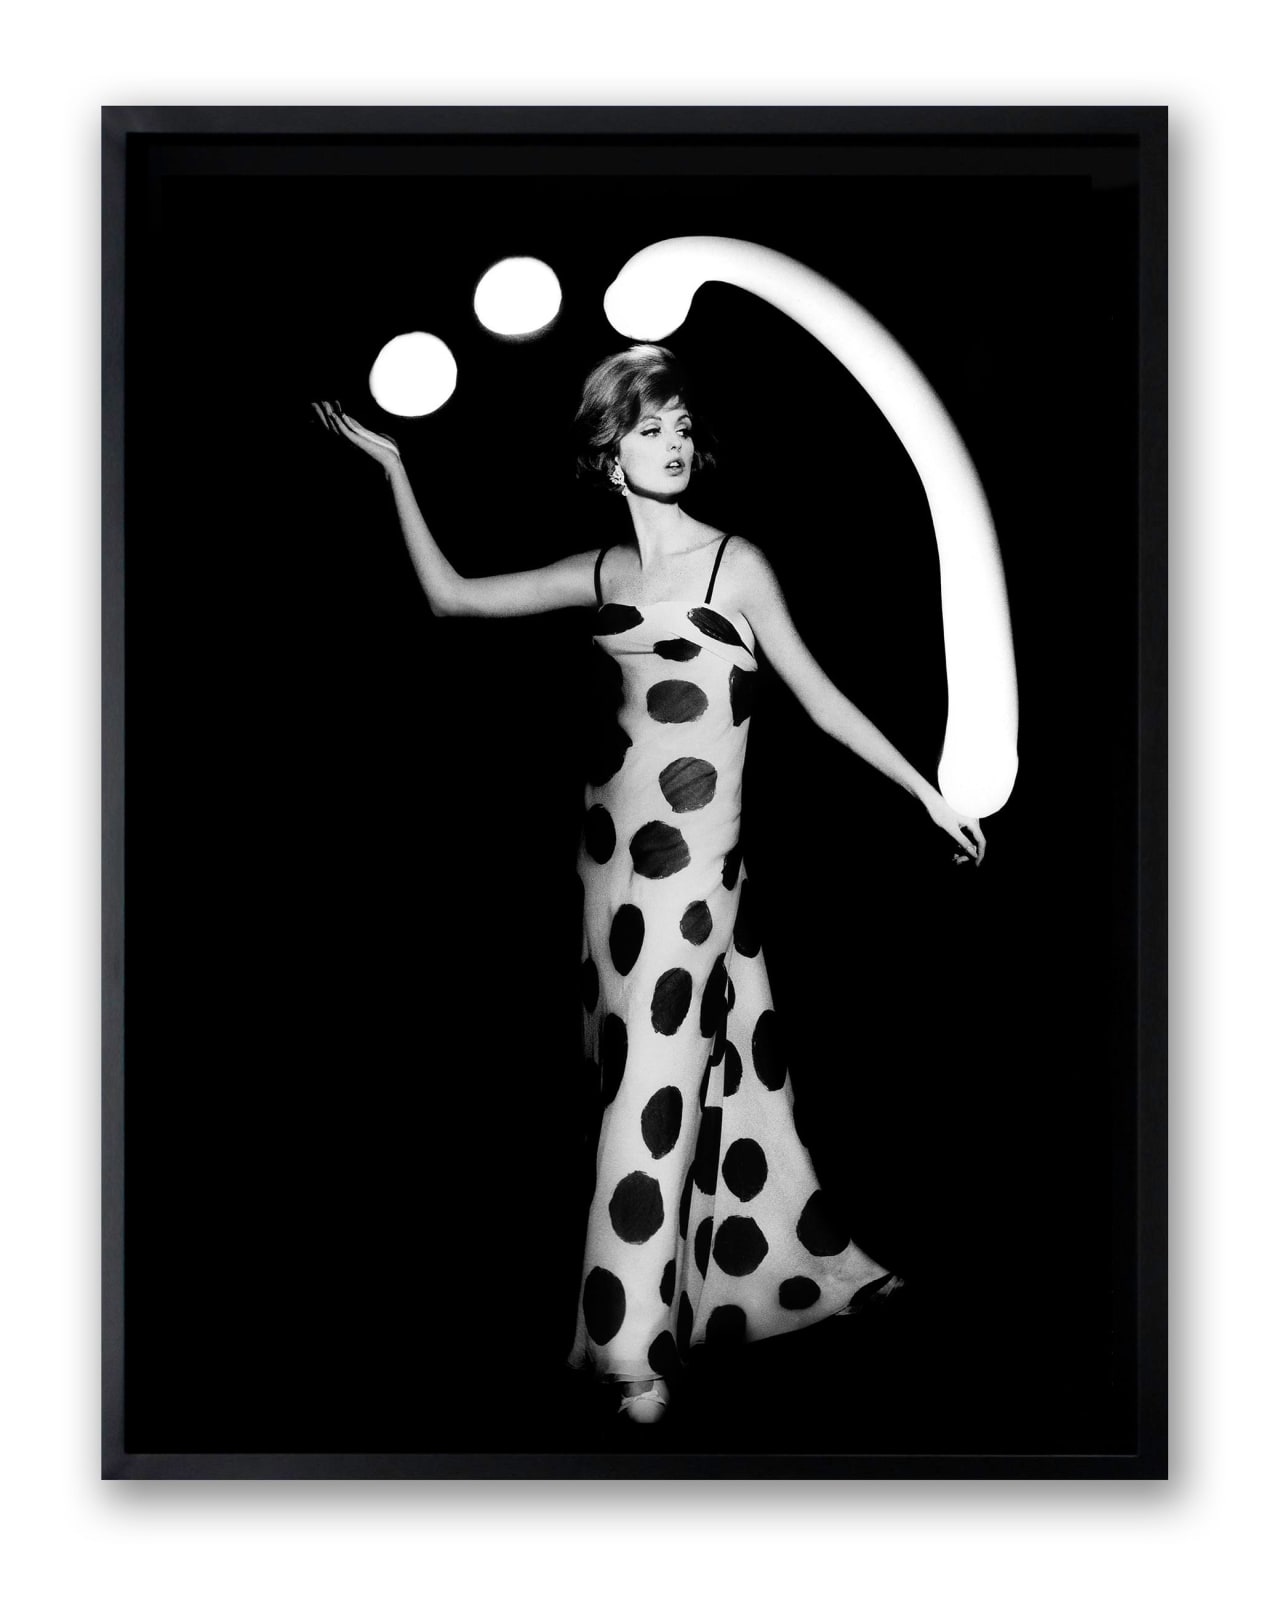 William Klein, Dorothy juggling white light balls, 1962